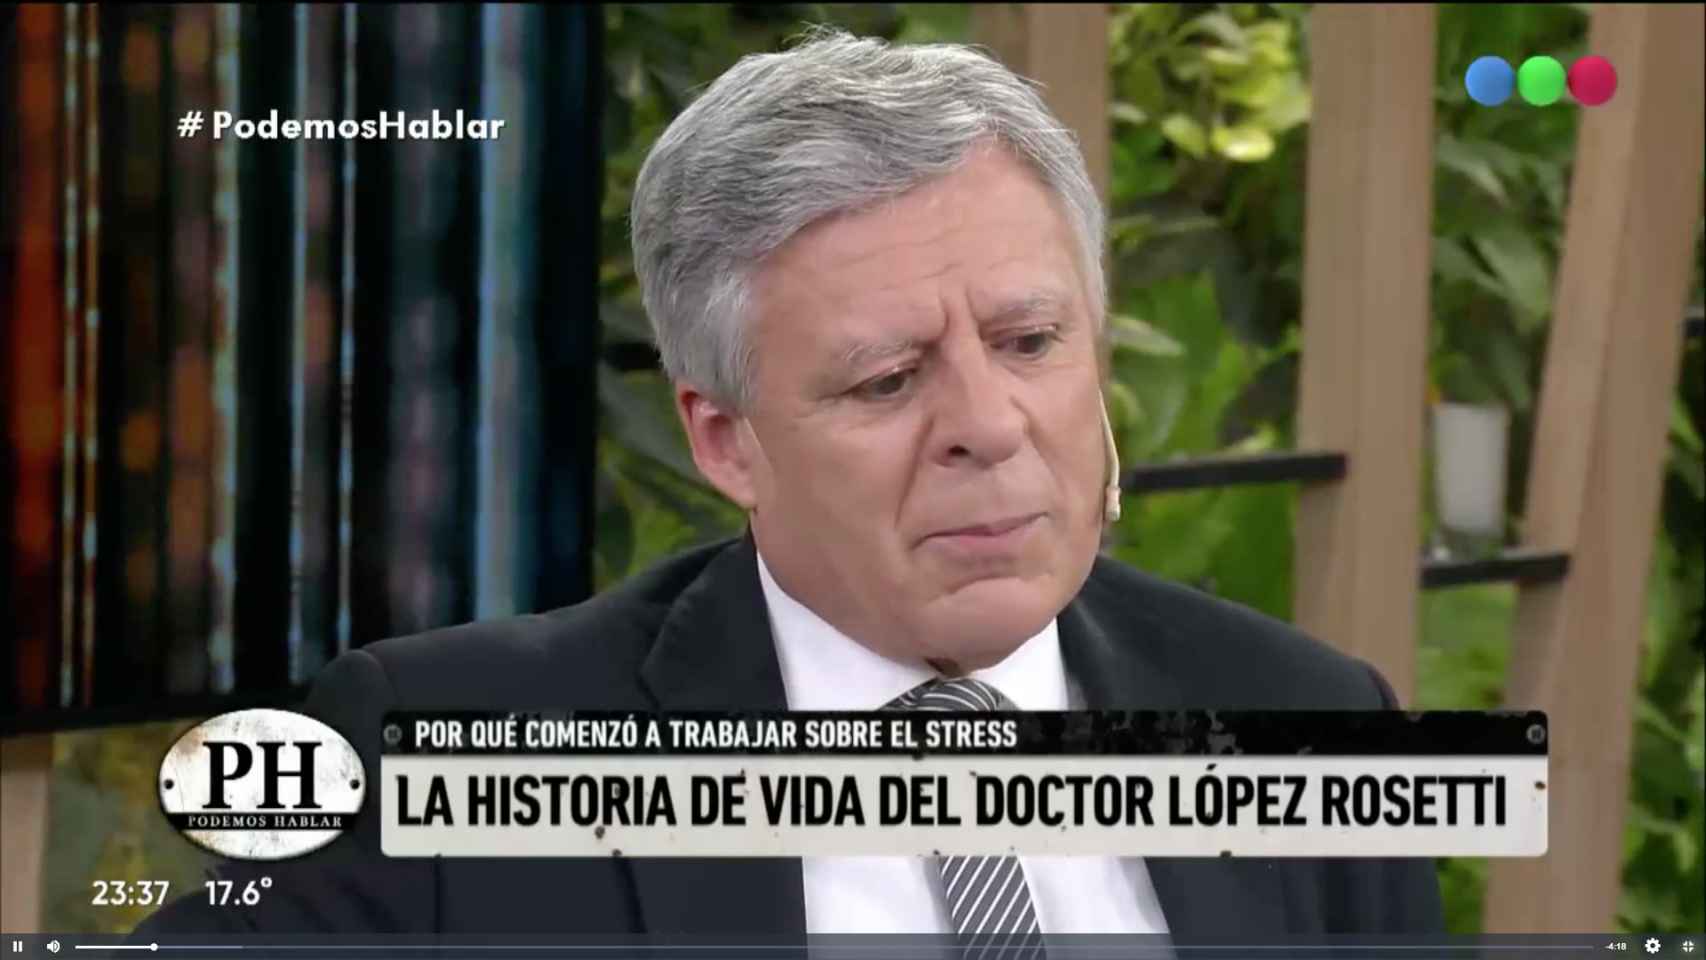 El doctor López Rosetti relató los efectos que el estrés tuvo en su salud / PODEMOS HABLAR